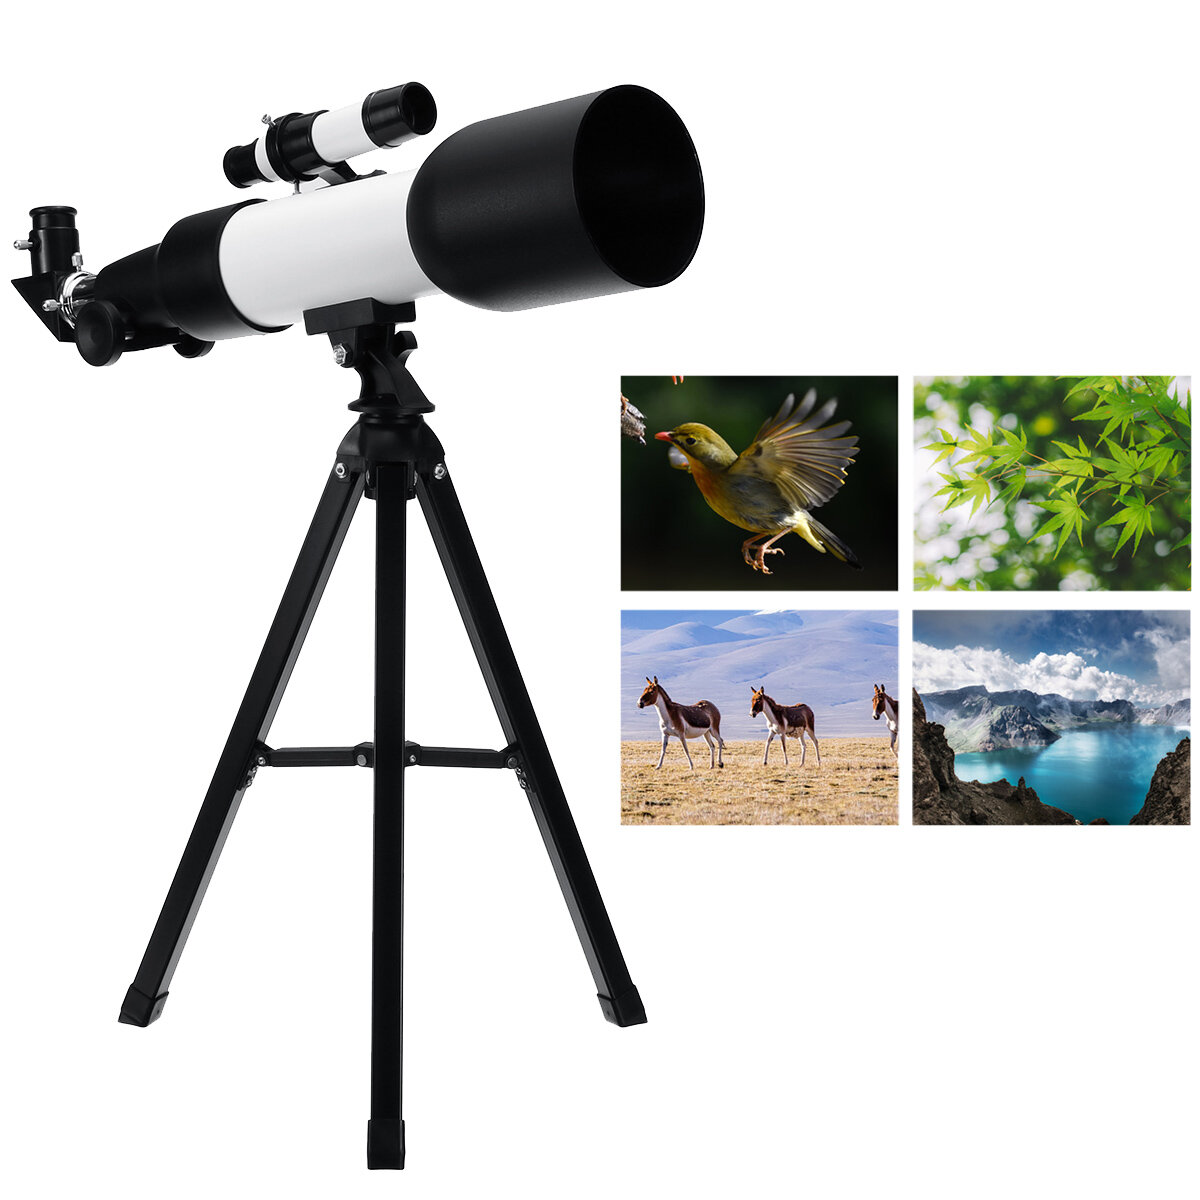 Разрешение F360/60 мм HD астрономического телескопа с 90° зеркалом для наблюдения за звездным небом с высоким увеличением и четким изображением на монокуляре с треногой.